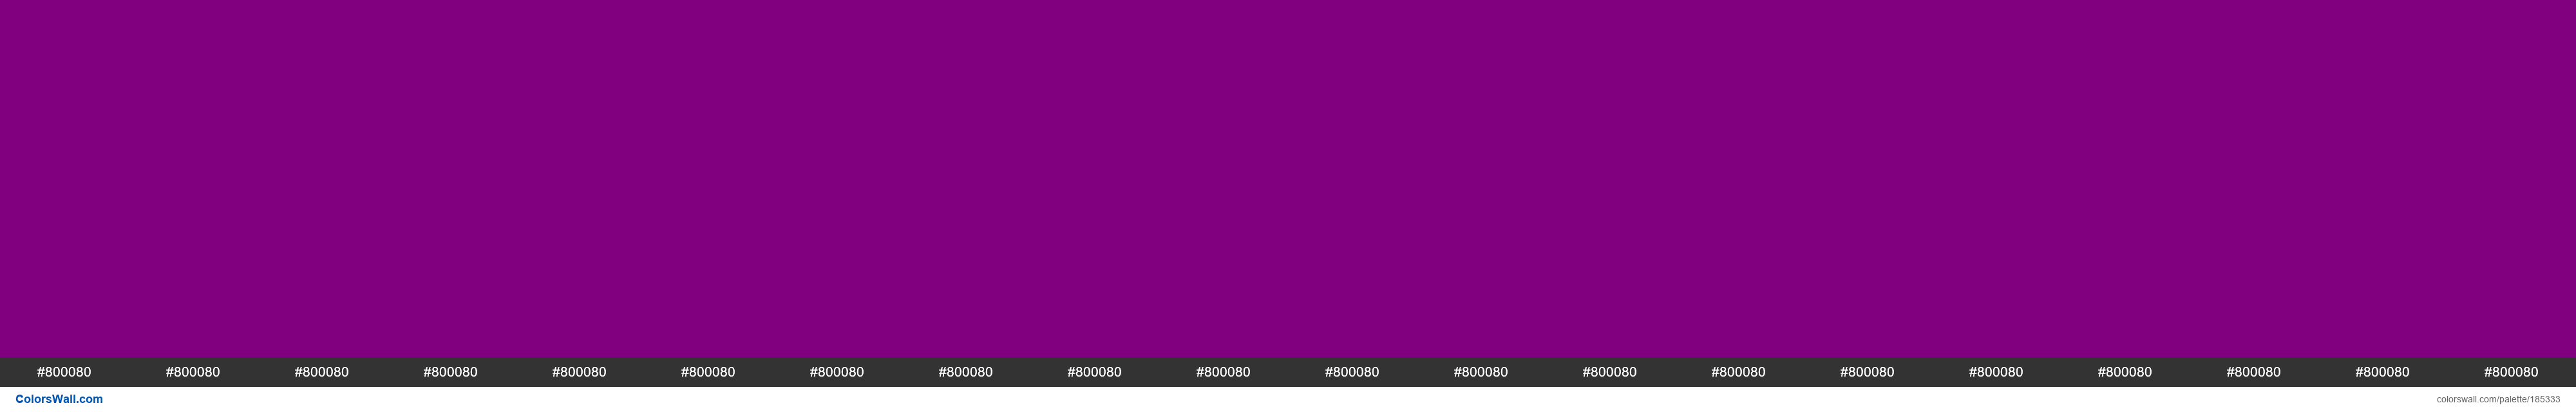 hjkl paleta de colores #800080, #800080, #800080 - ColorsWall